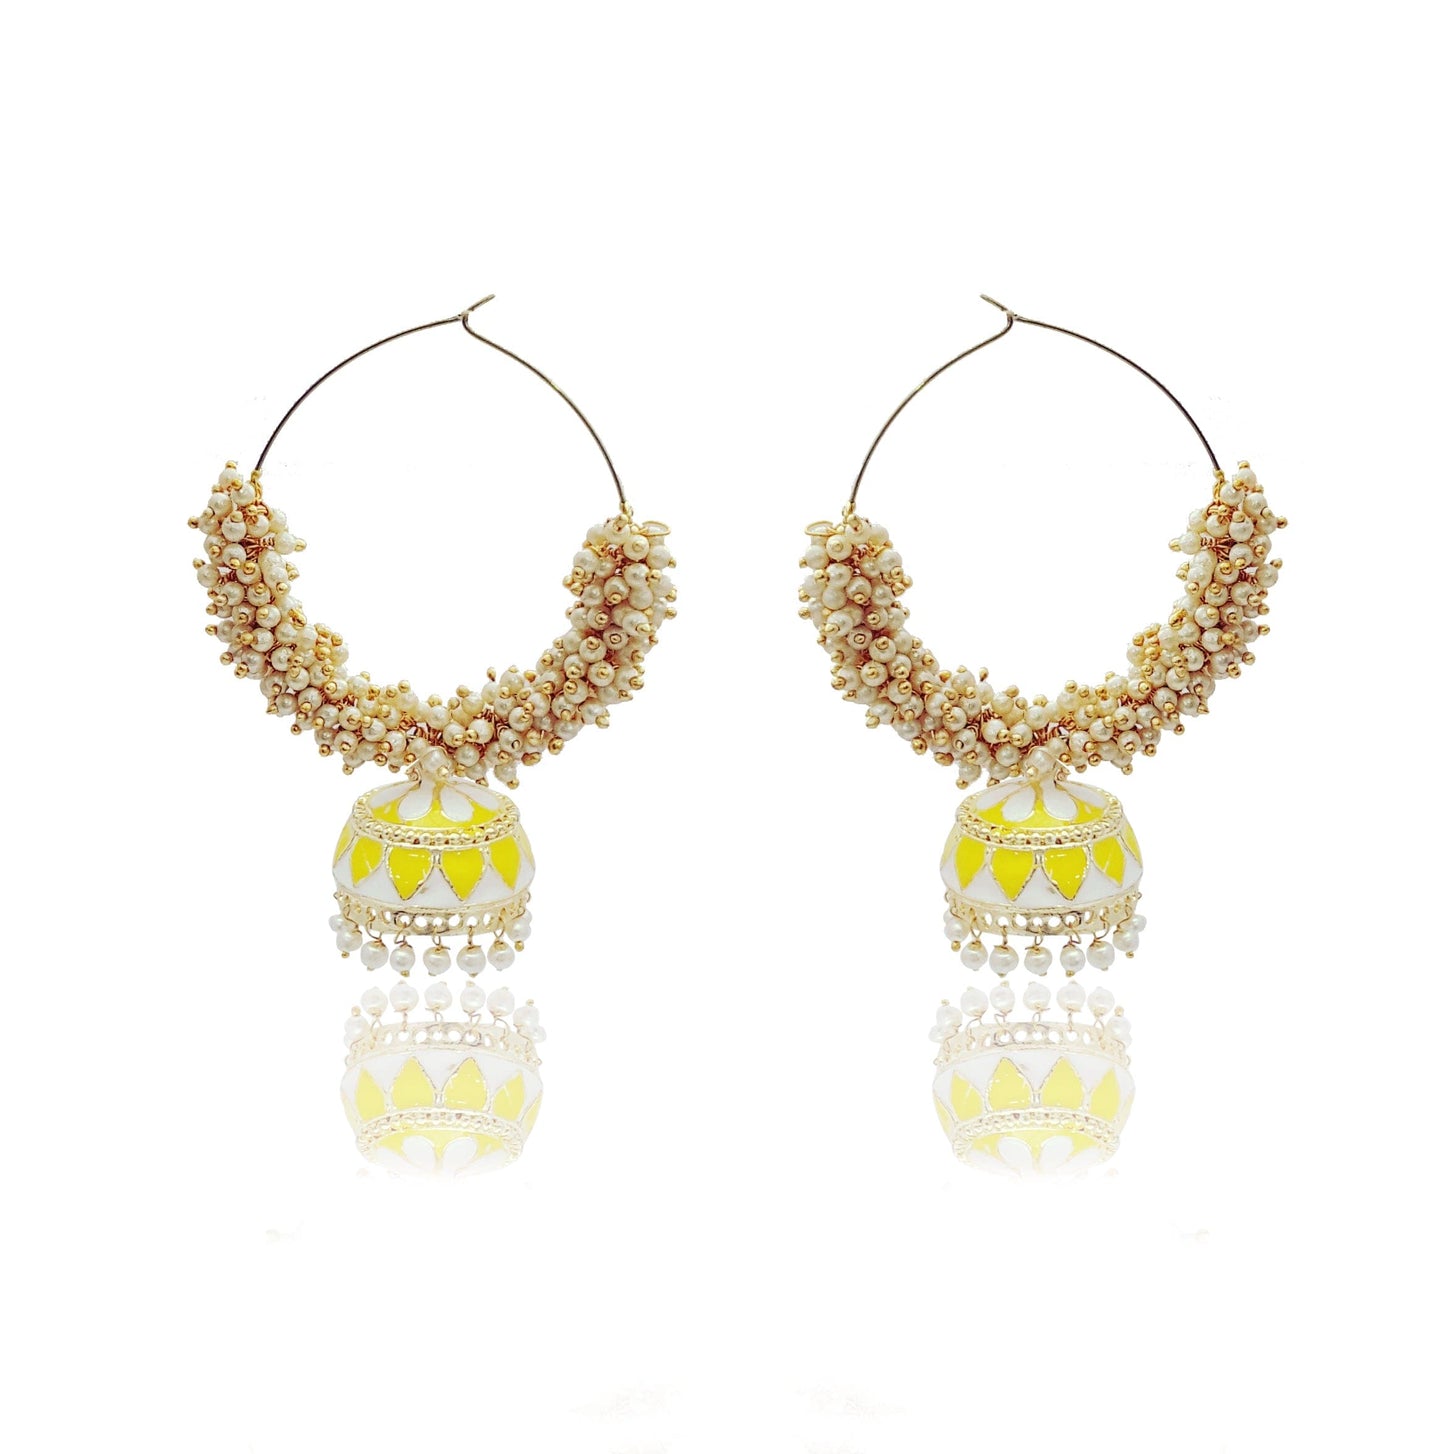 Moonstruck Gold Pearl Hoops Fashion Earrings For Women (Yellow) - www.MoonstruckINC.com